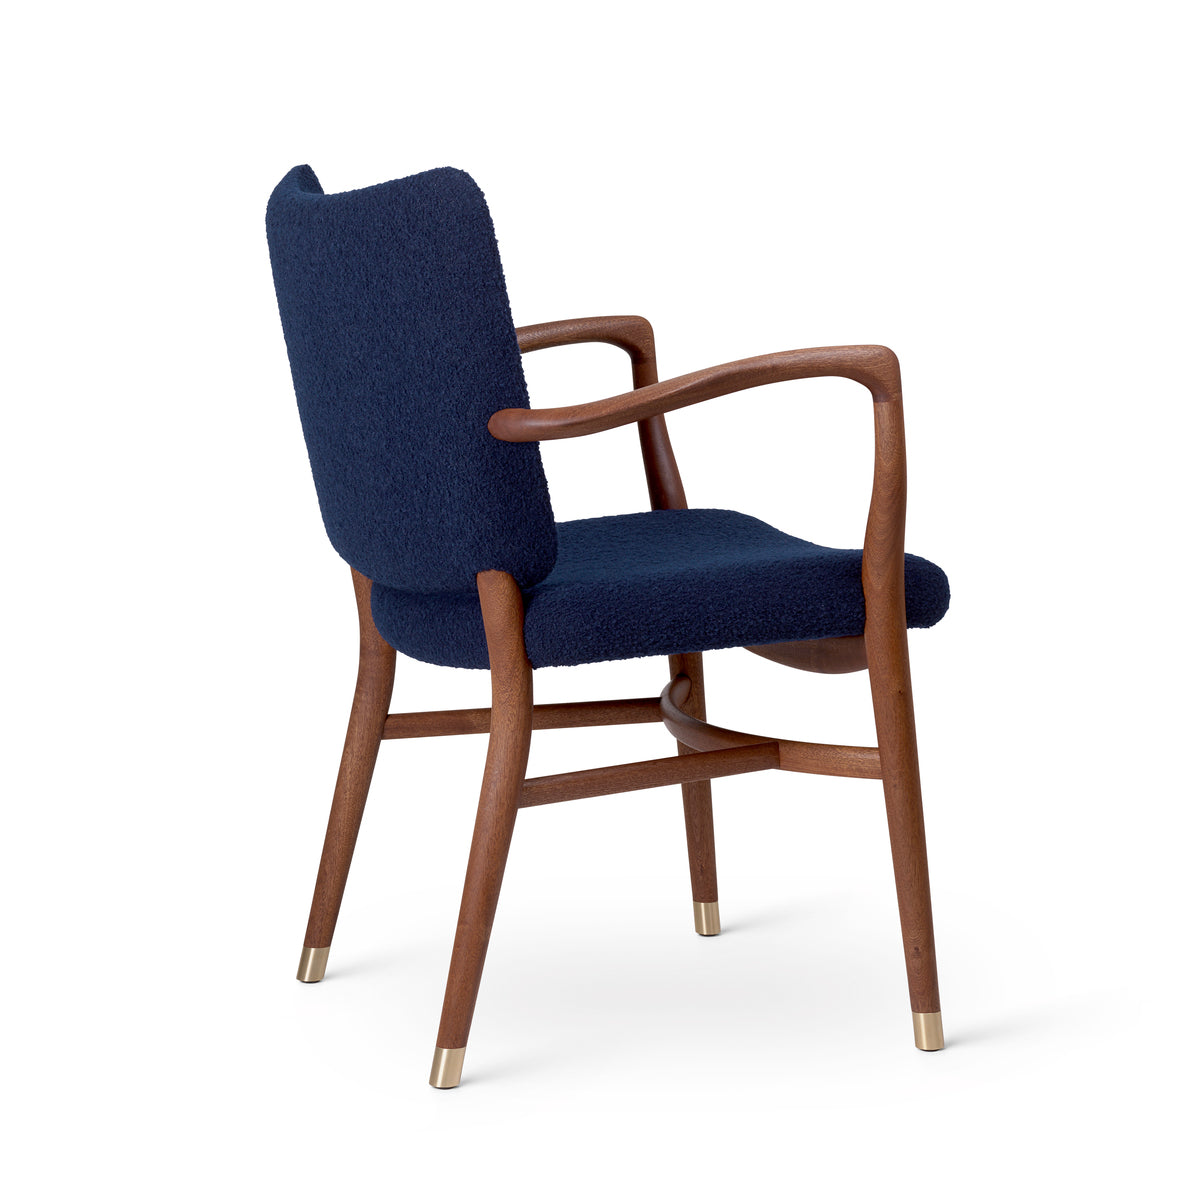 Carl Hansen VLA61 Monar Ch -fauteuil, mahonie olie/baru 0780 textiel